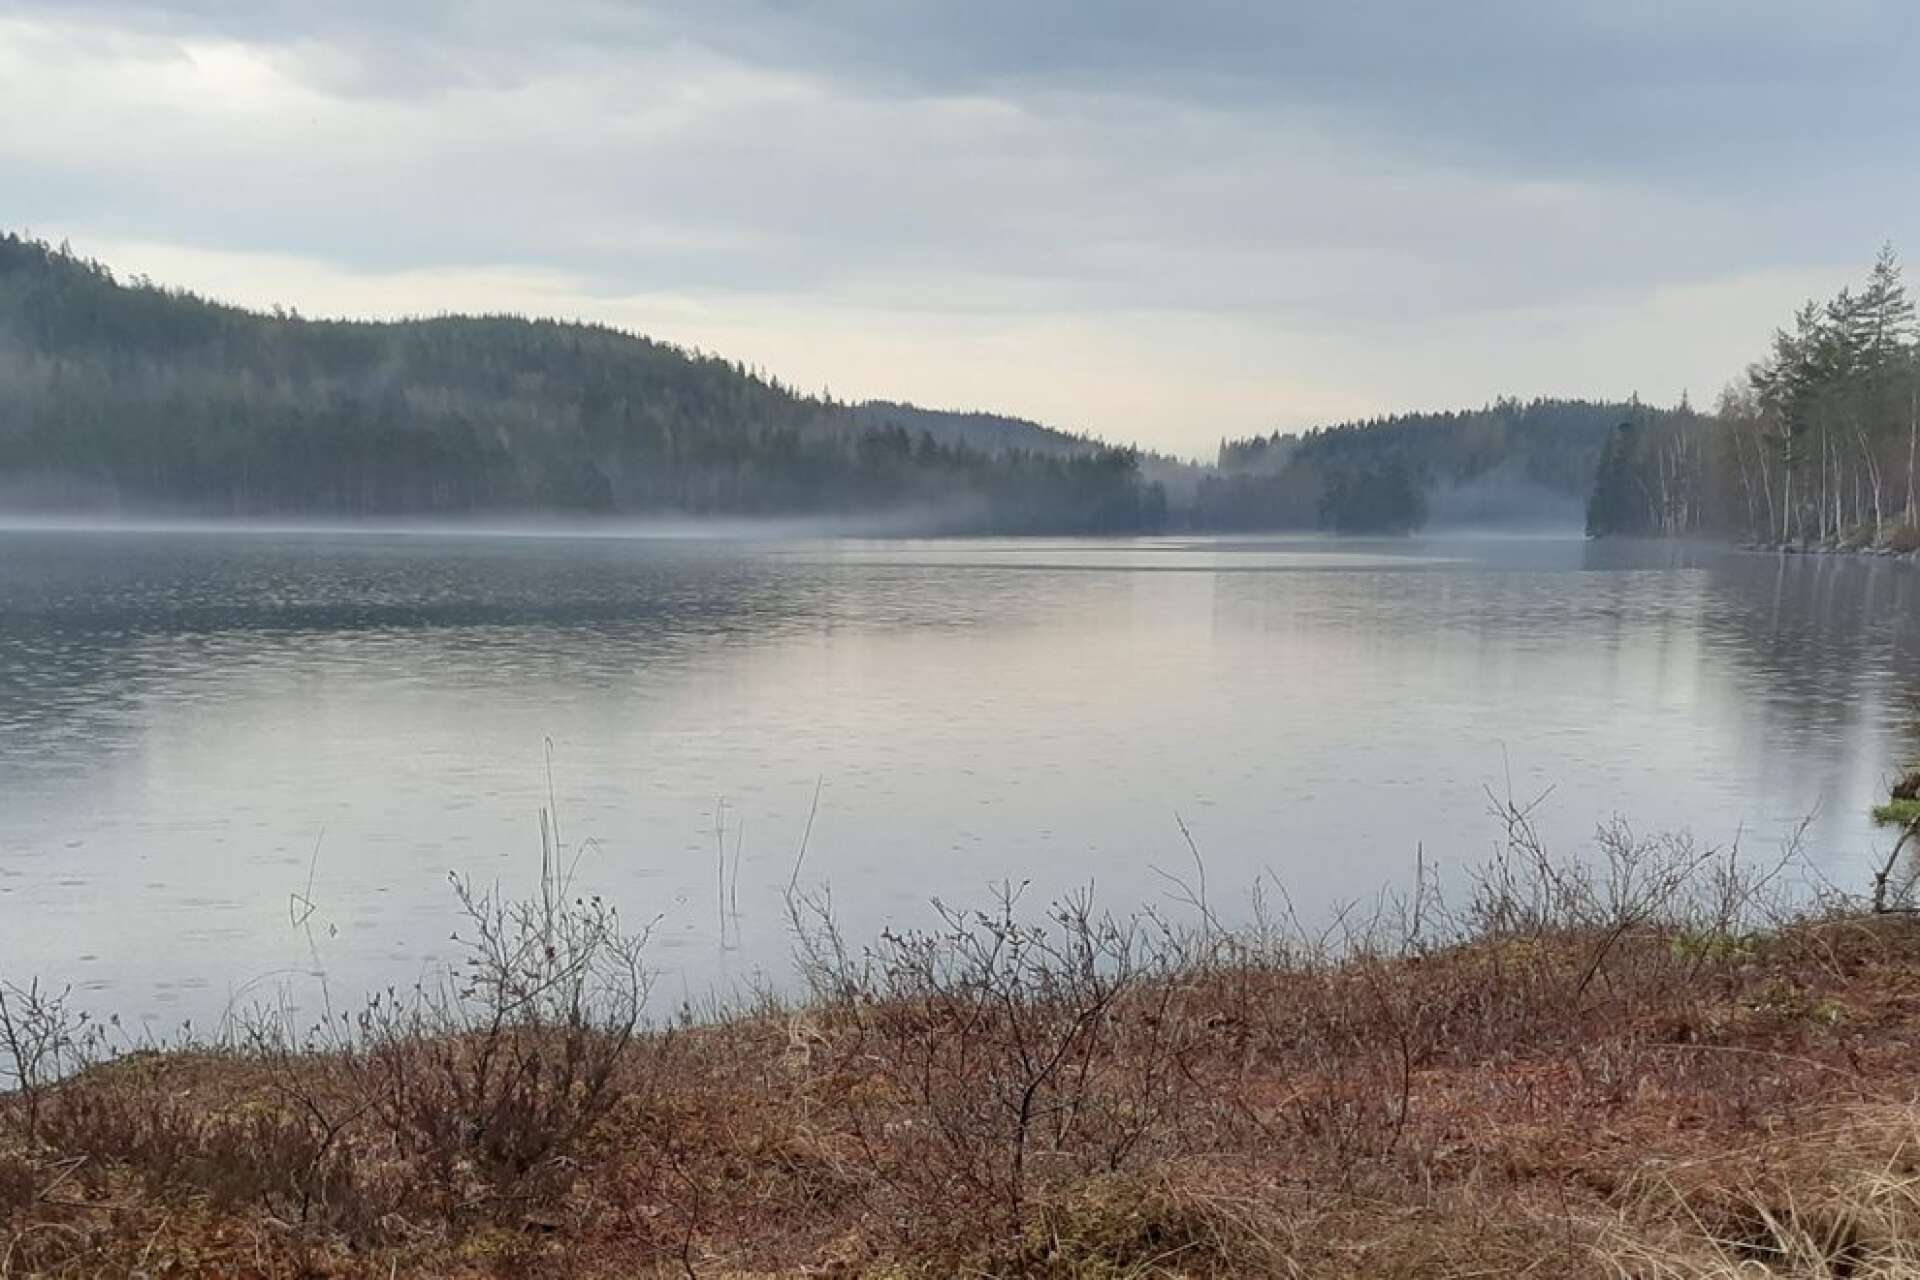 Skogen är alltid nära i Värmland. Nu blir skog också ett tema för ett konstprojekt, där många aspekter på skogen möts.